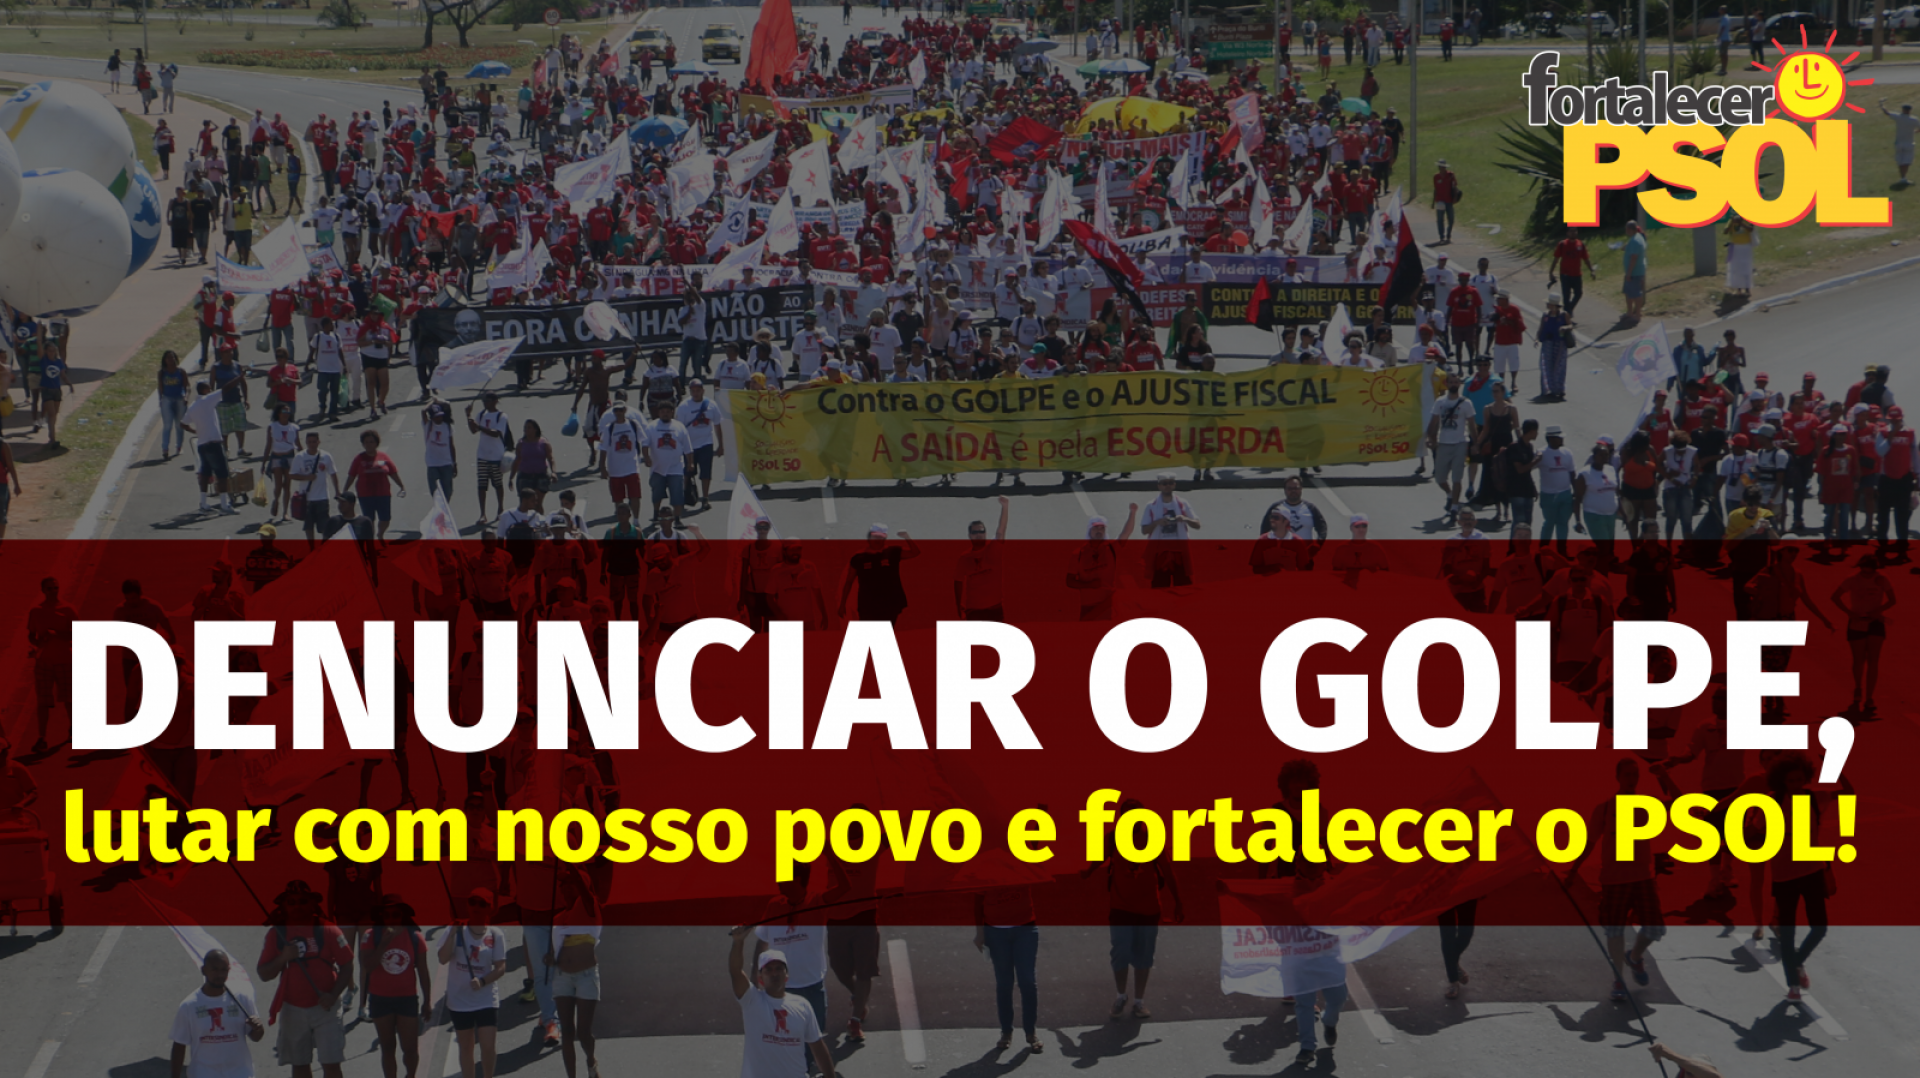 [Denunciar o golpe, lutar com nosso povo e fortalecer o PSOL!]